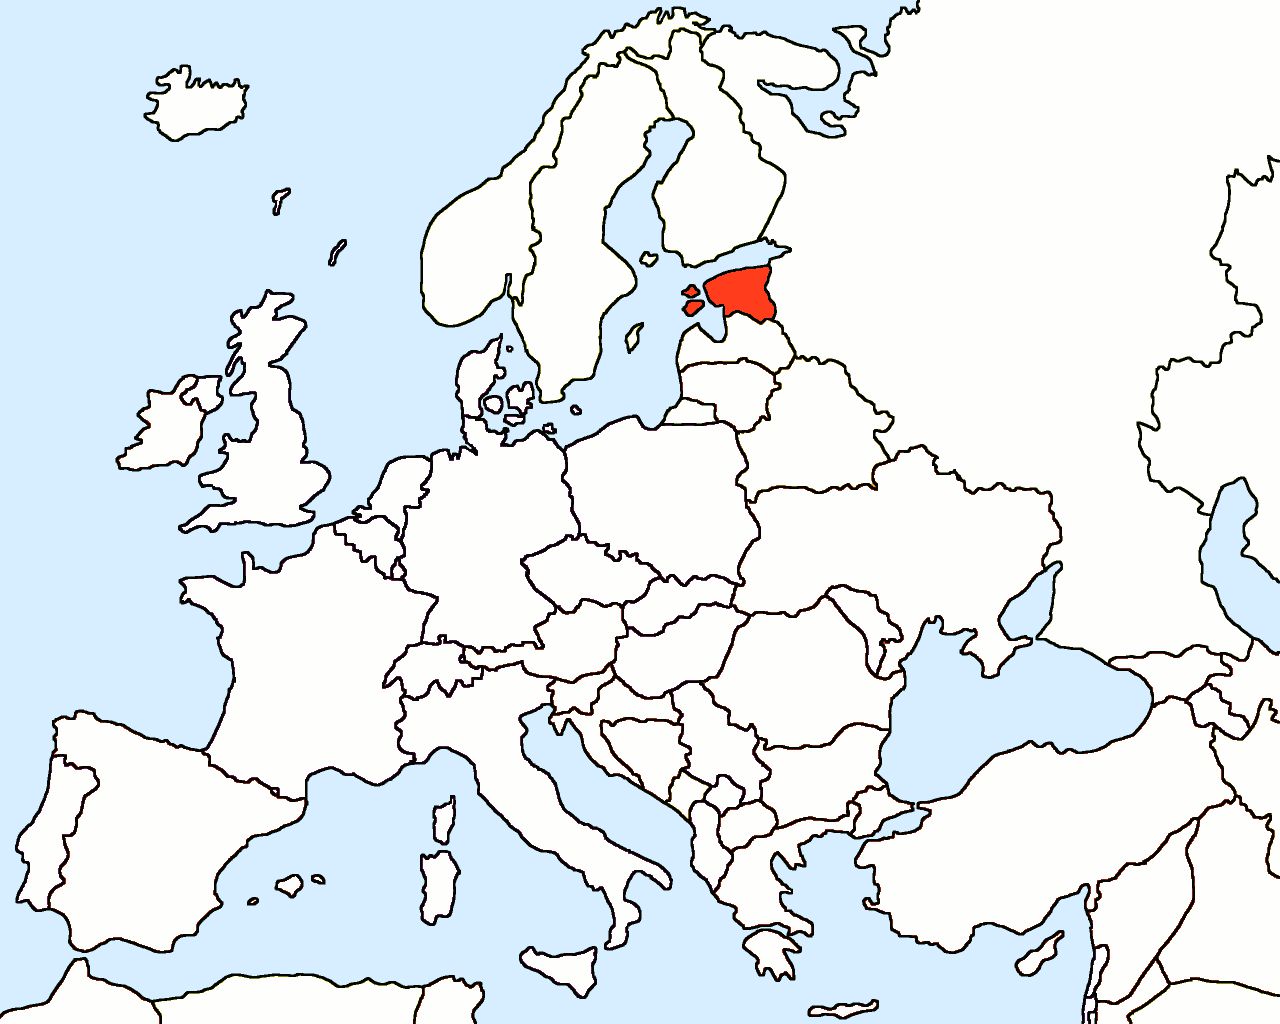 Estland auf der Europakarte